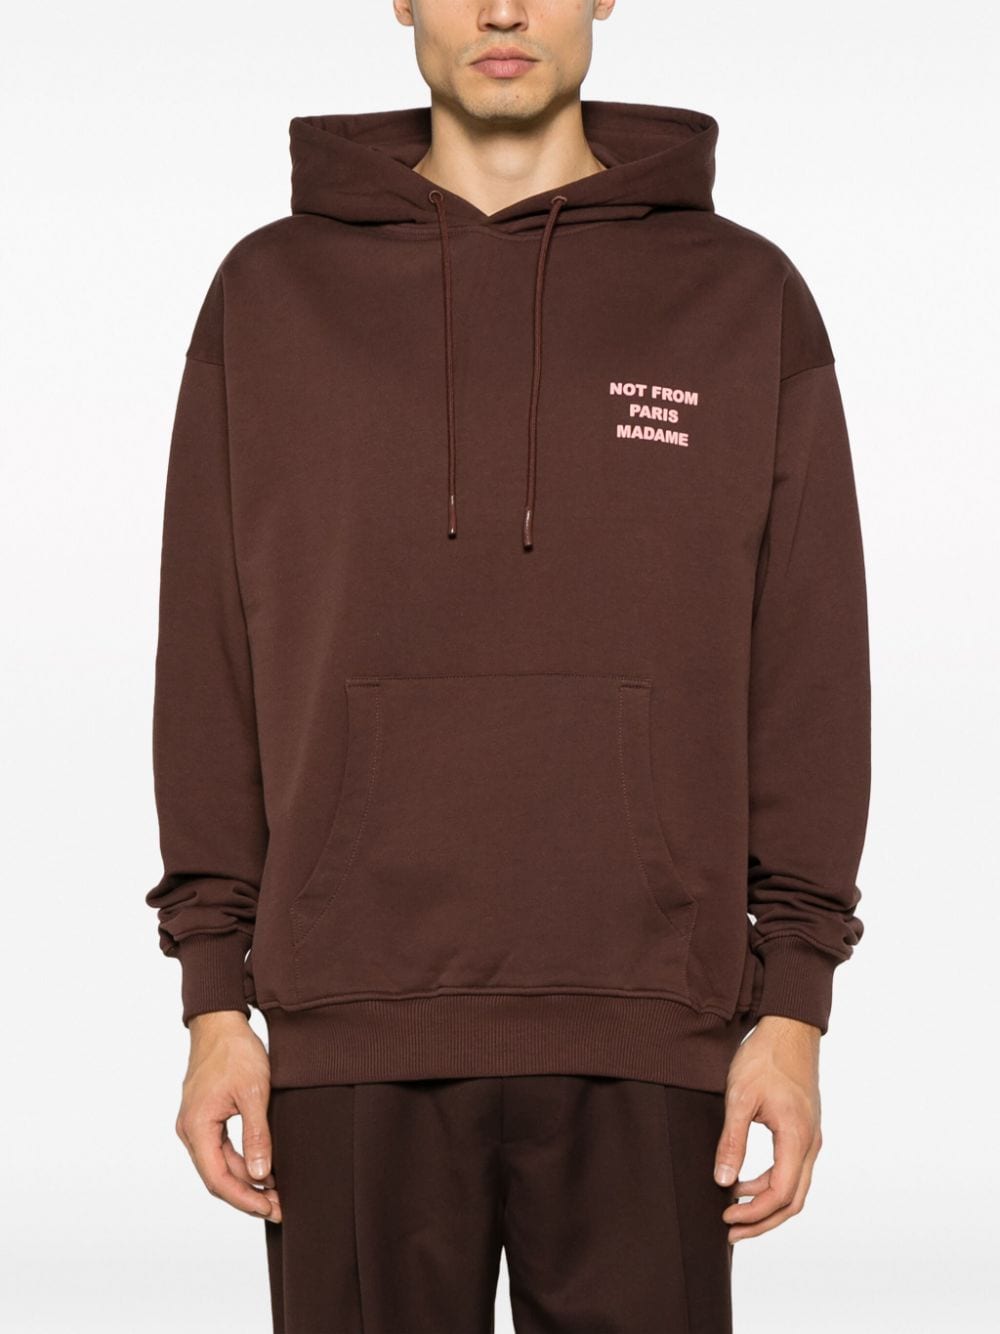 Le Hoodie slogan-print cotton hoodie